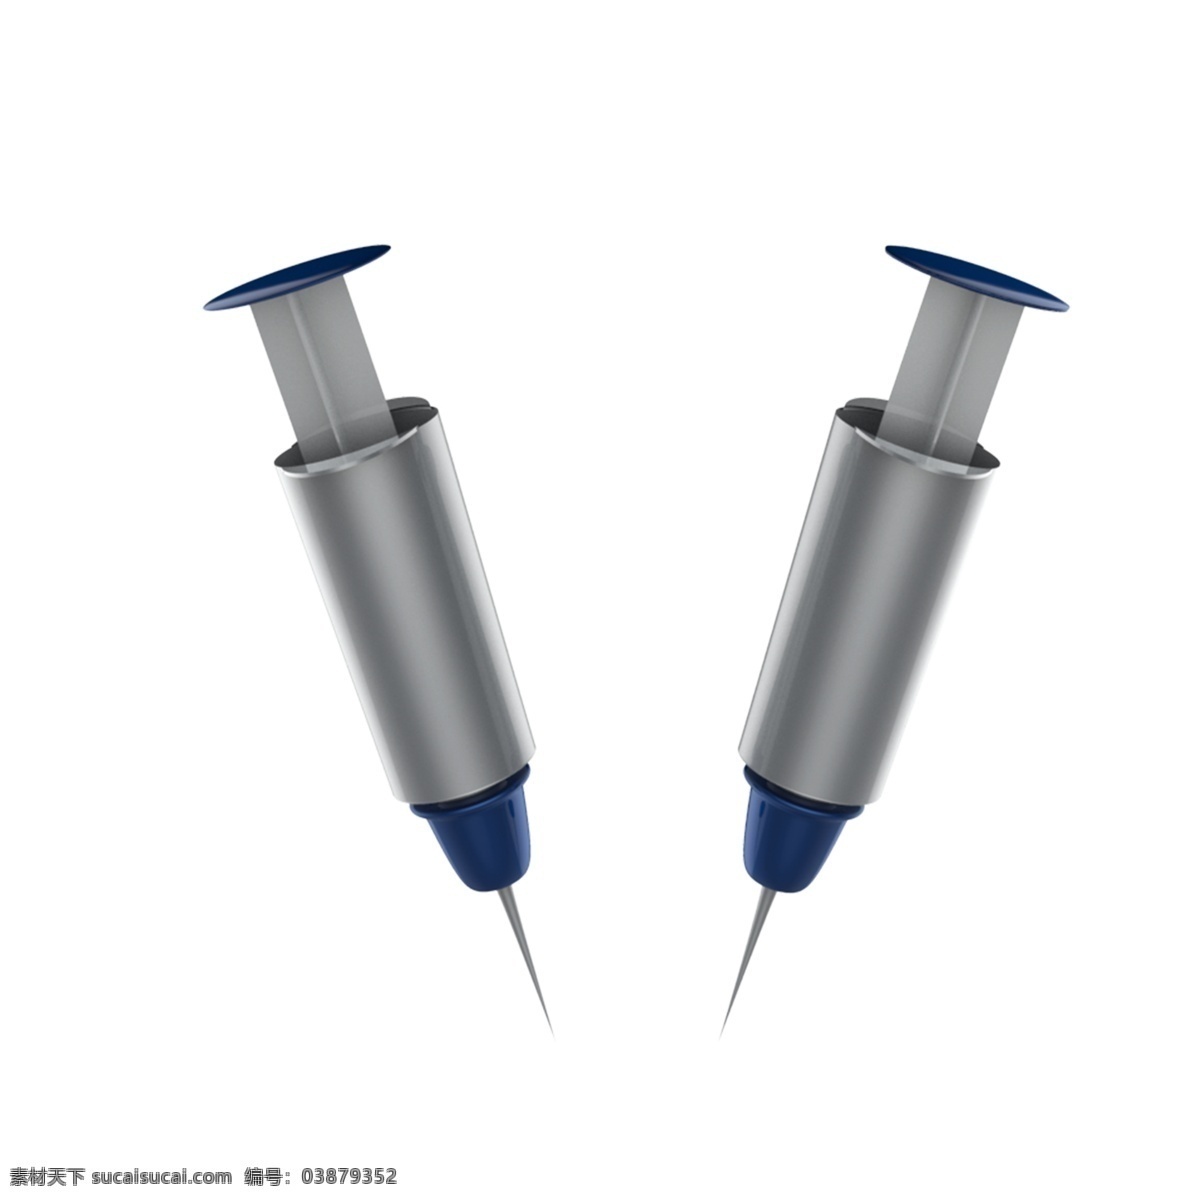 仿真针管 不锈钢针管 医疗设备 打针 抽血 麻醉针